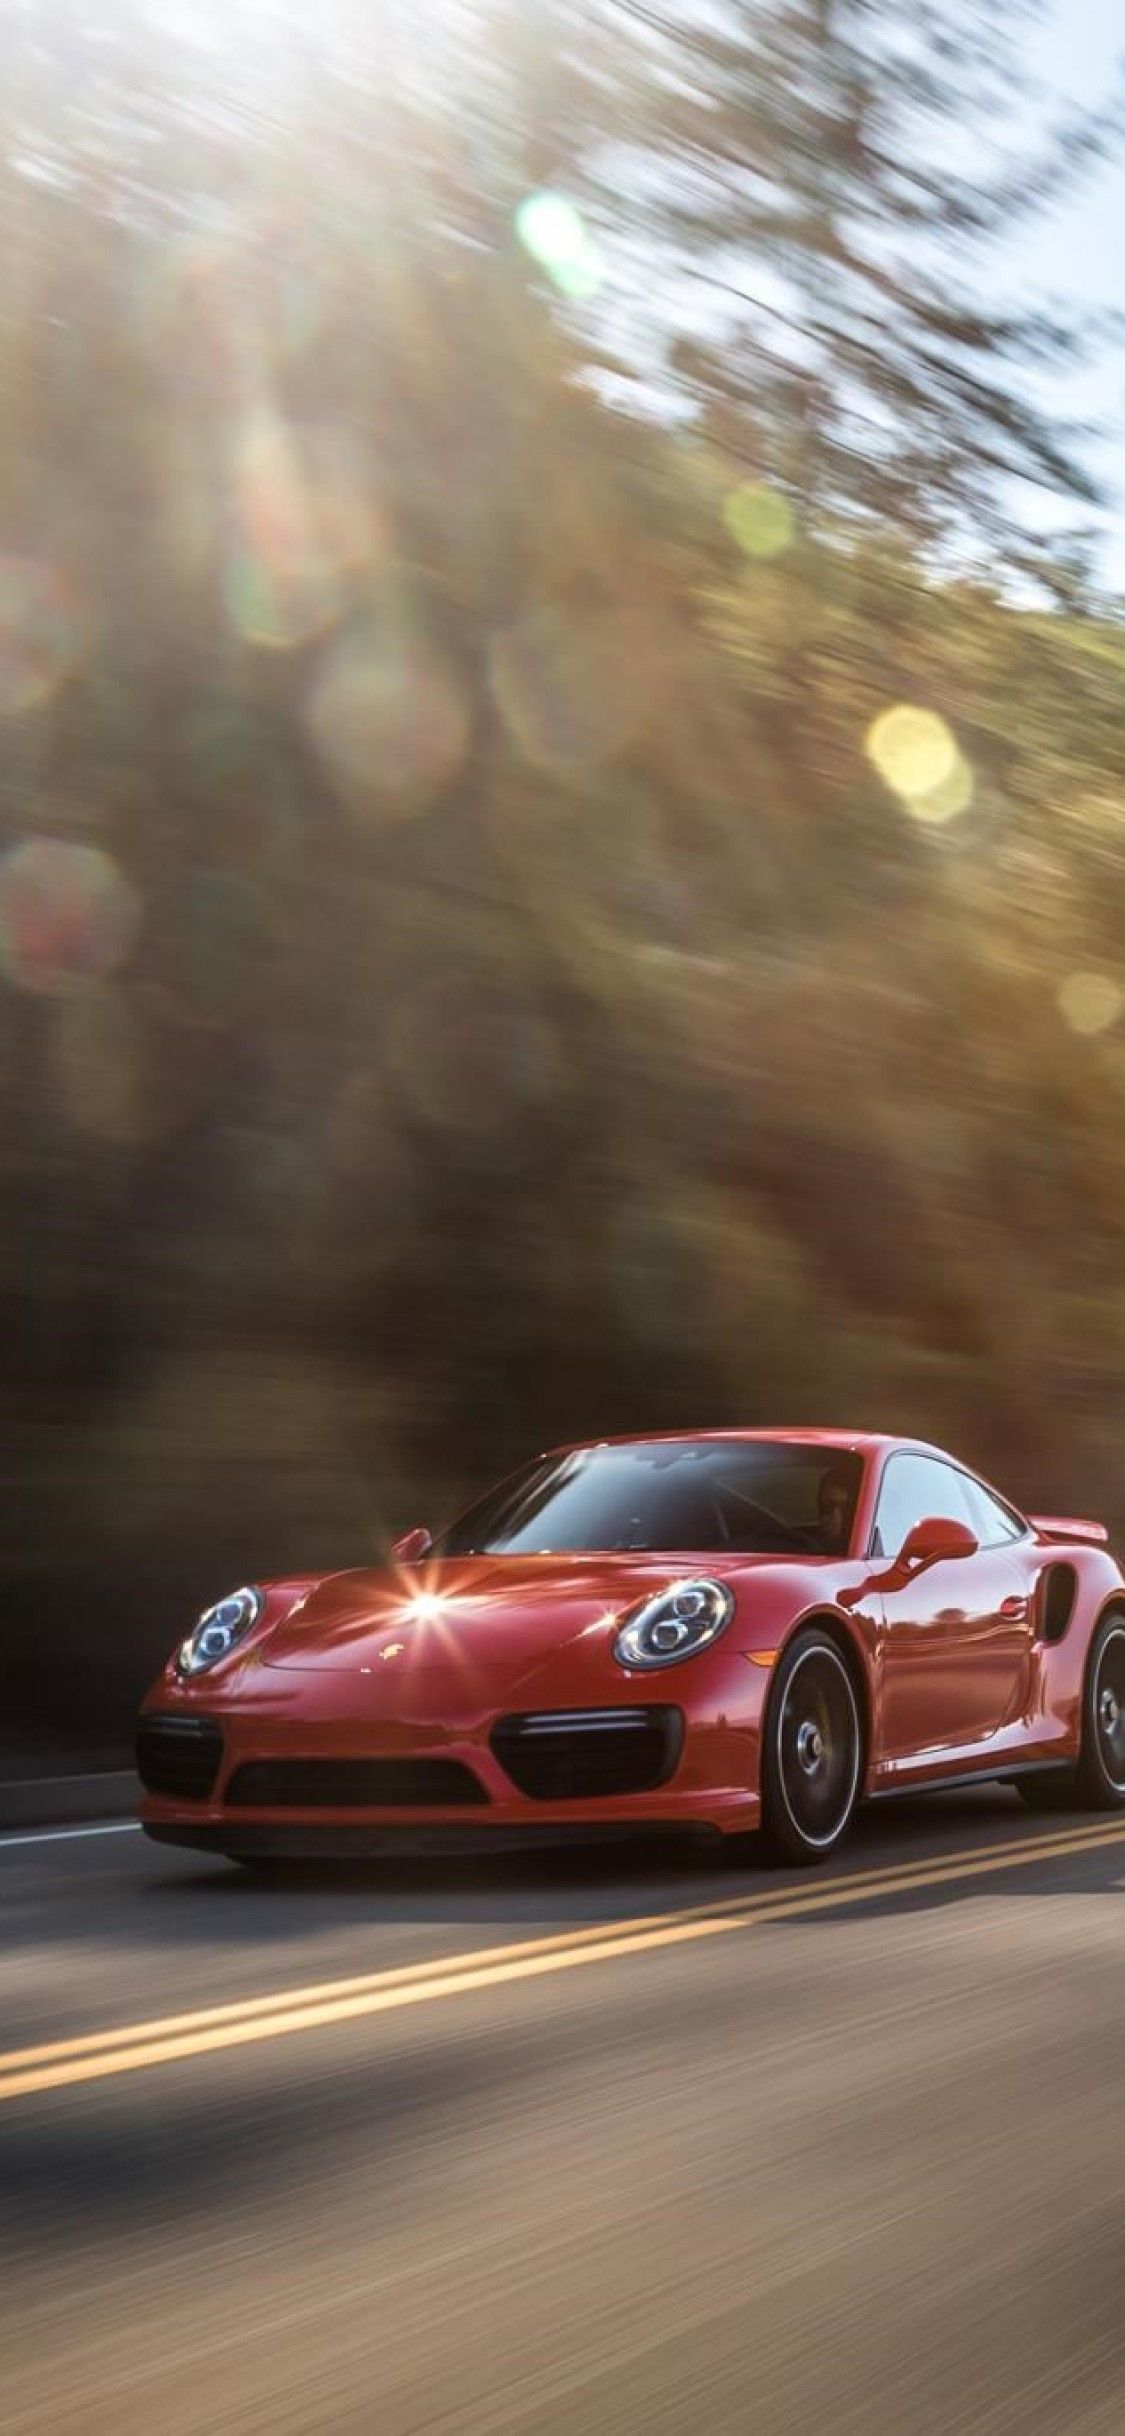 Porsche 911 Turbo iPhone